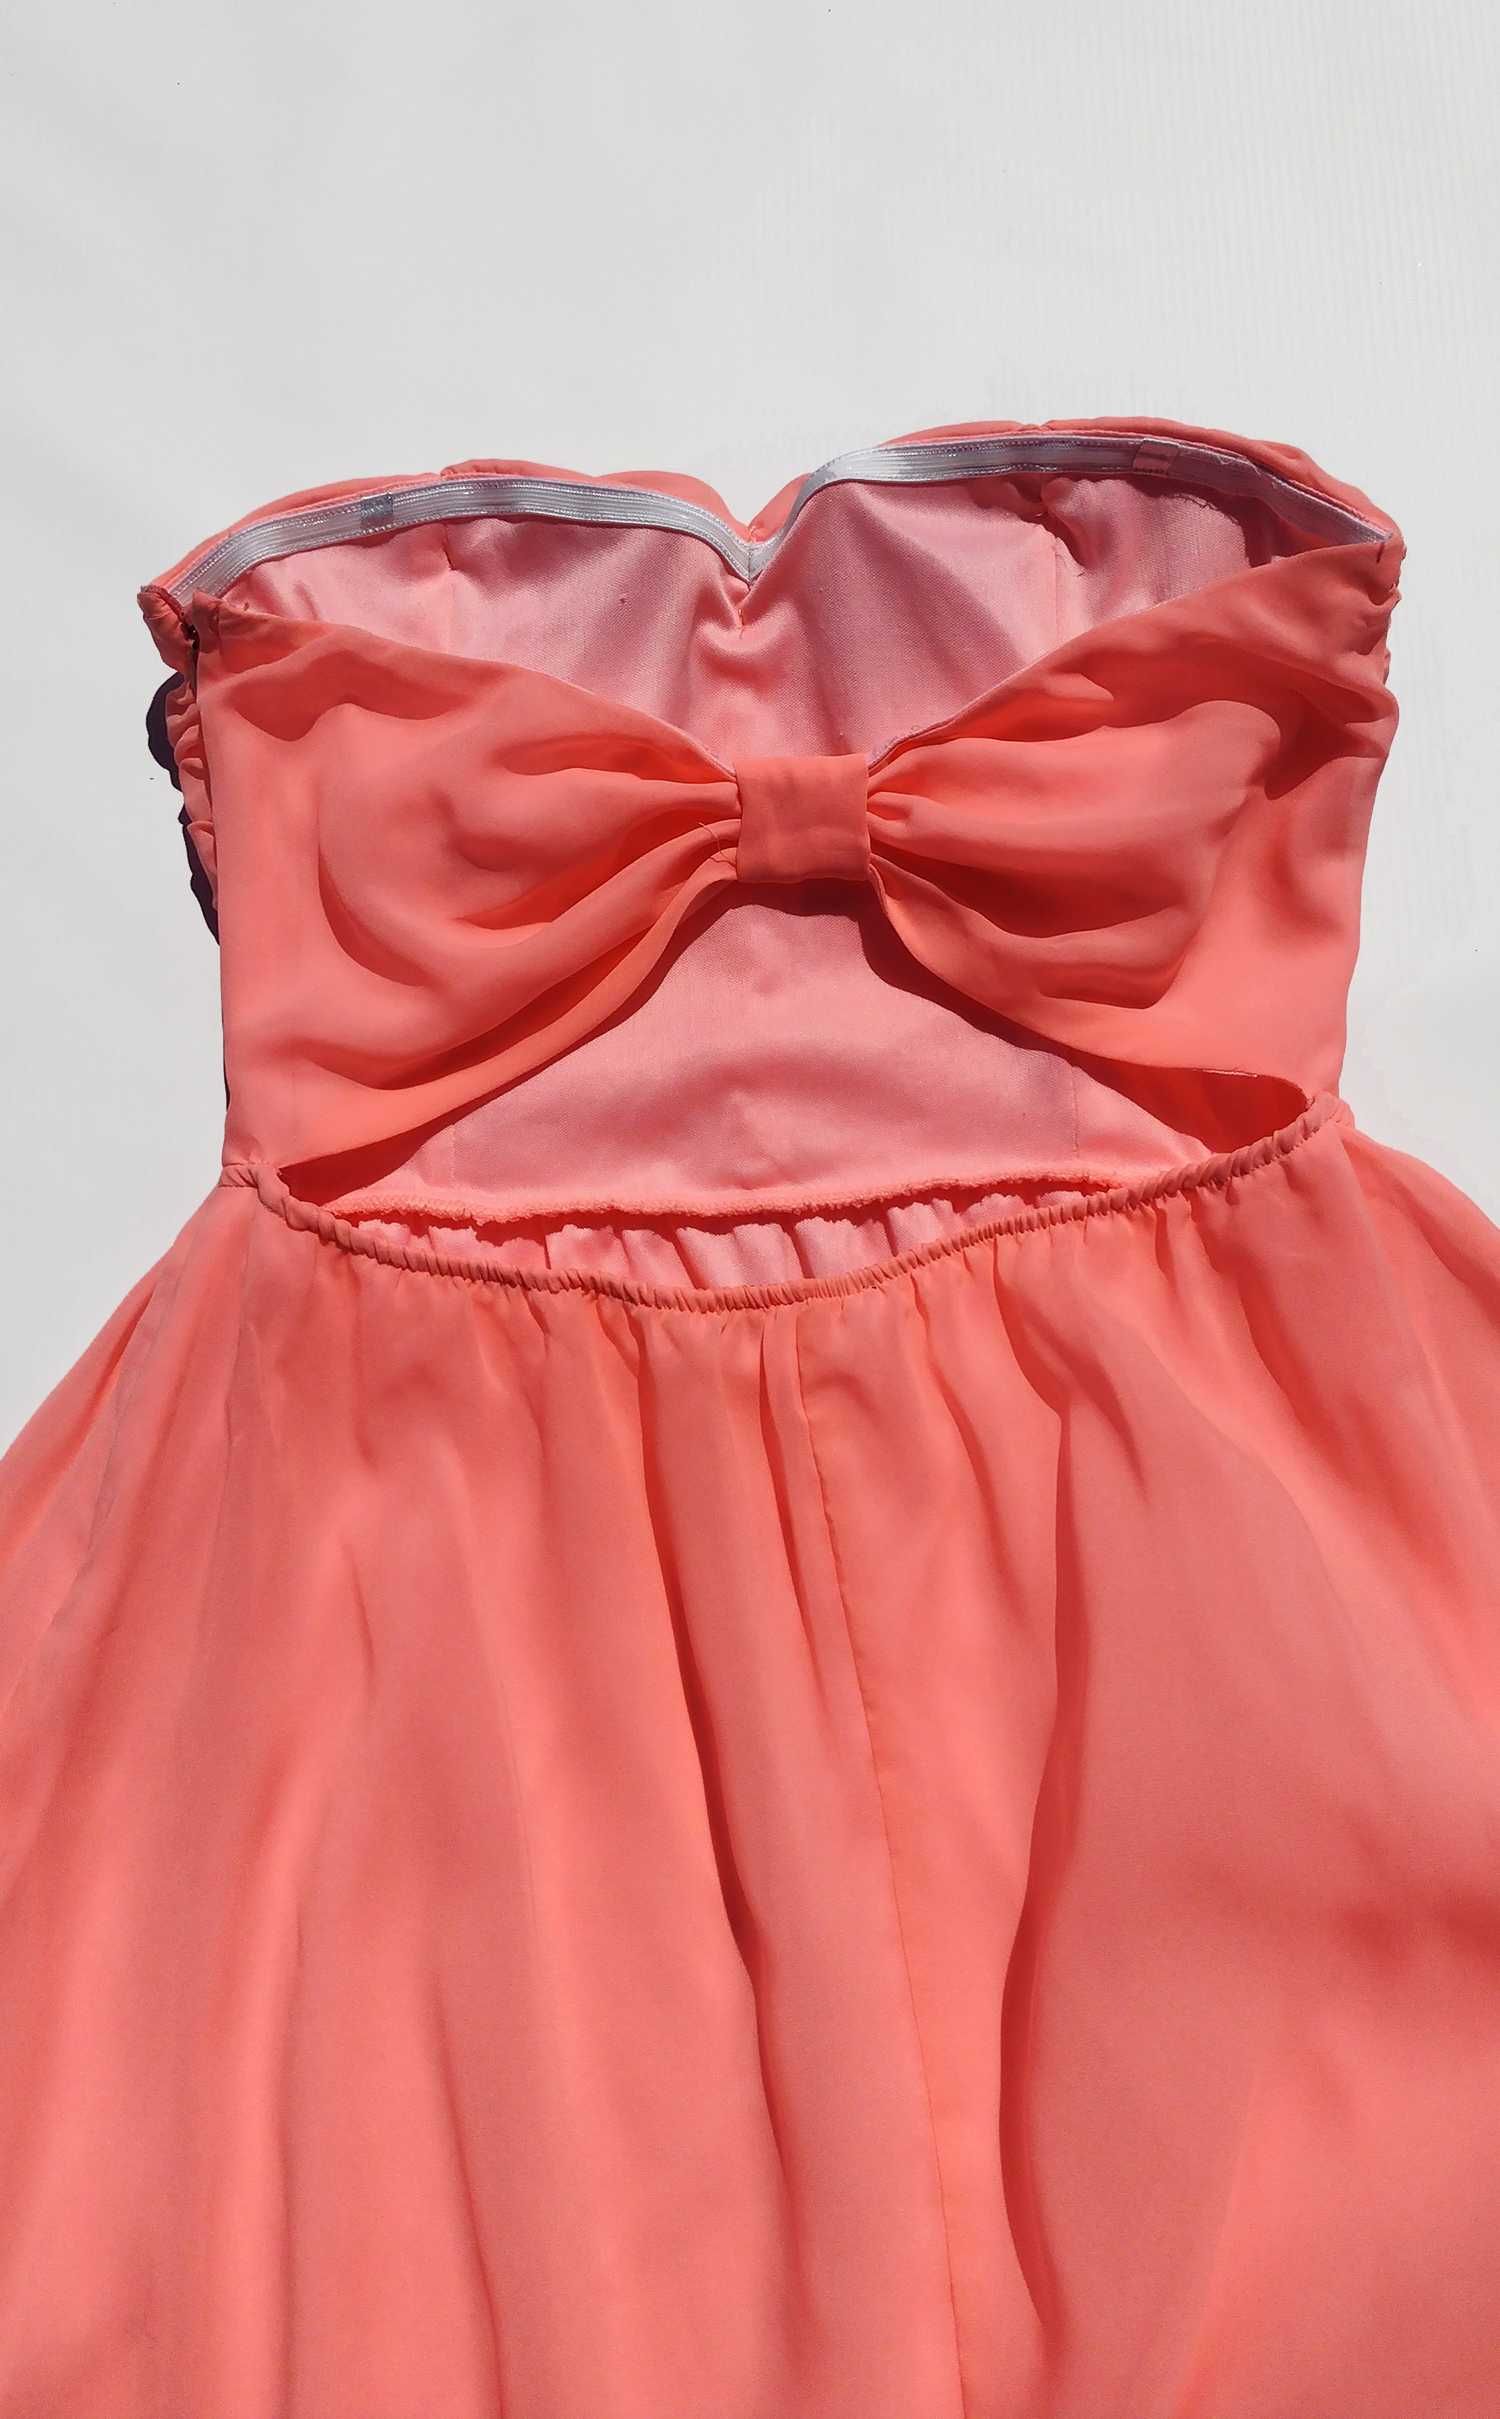 Красивое розовое гелевое платье с чашечками Tally Weijl L M